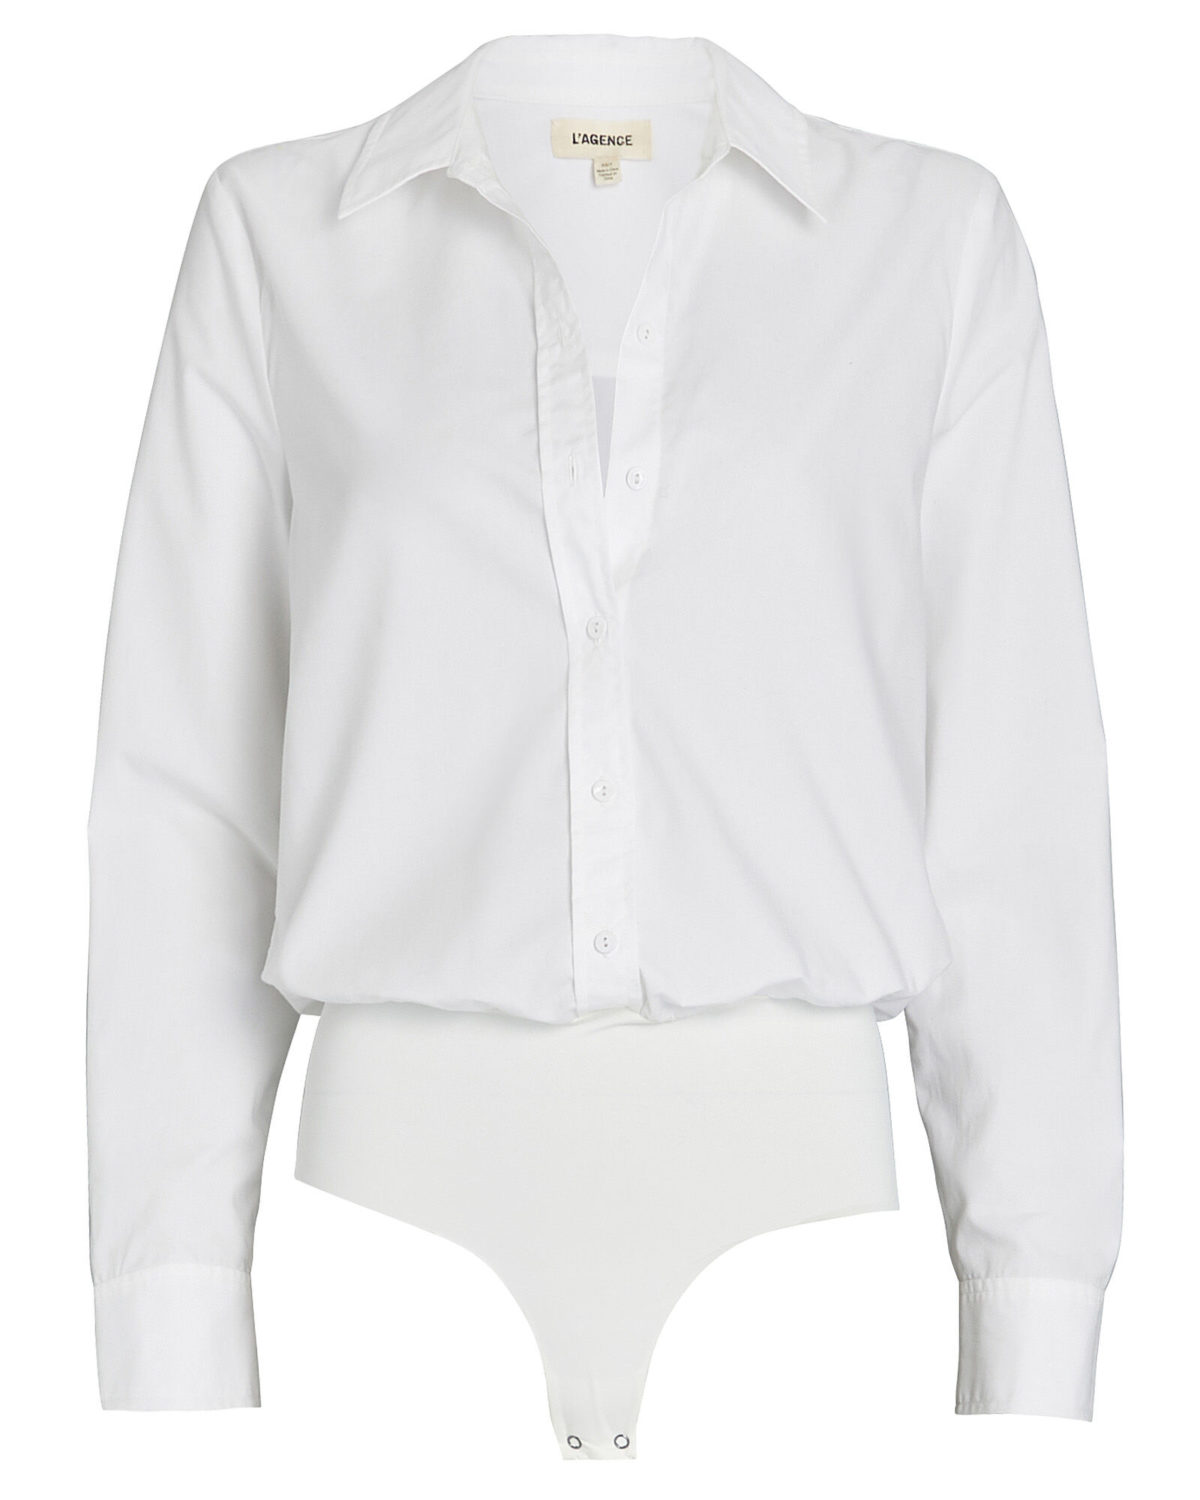 Style The White Shirt Bodysuit | von Boehm